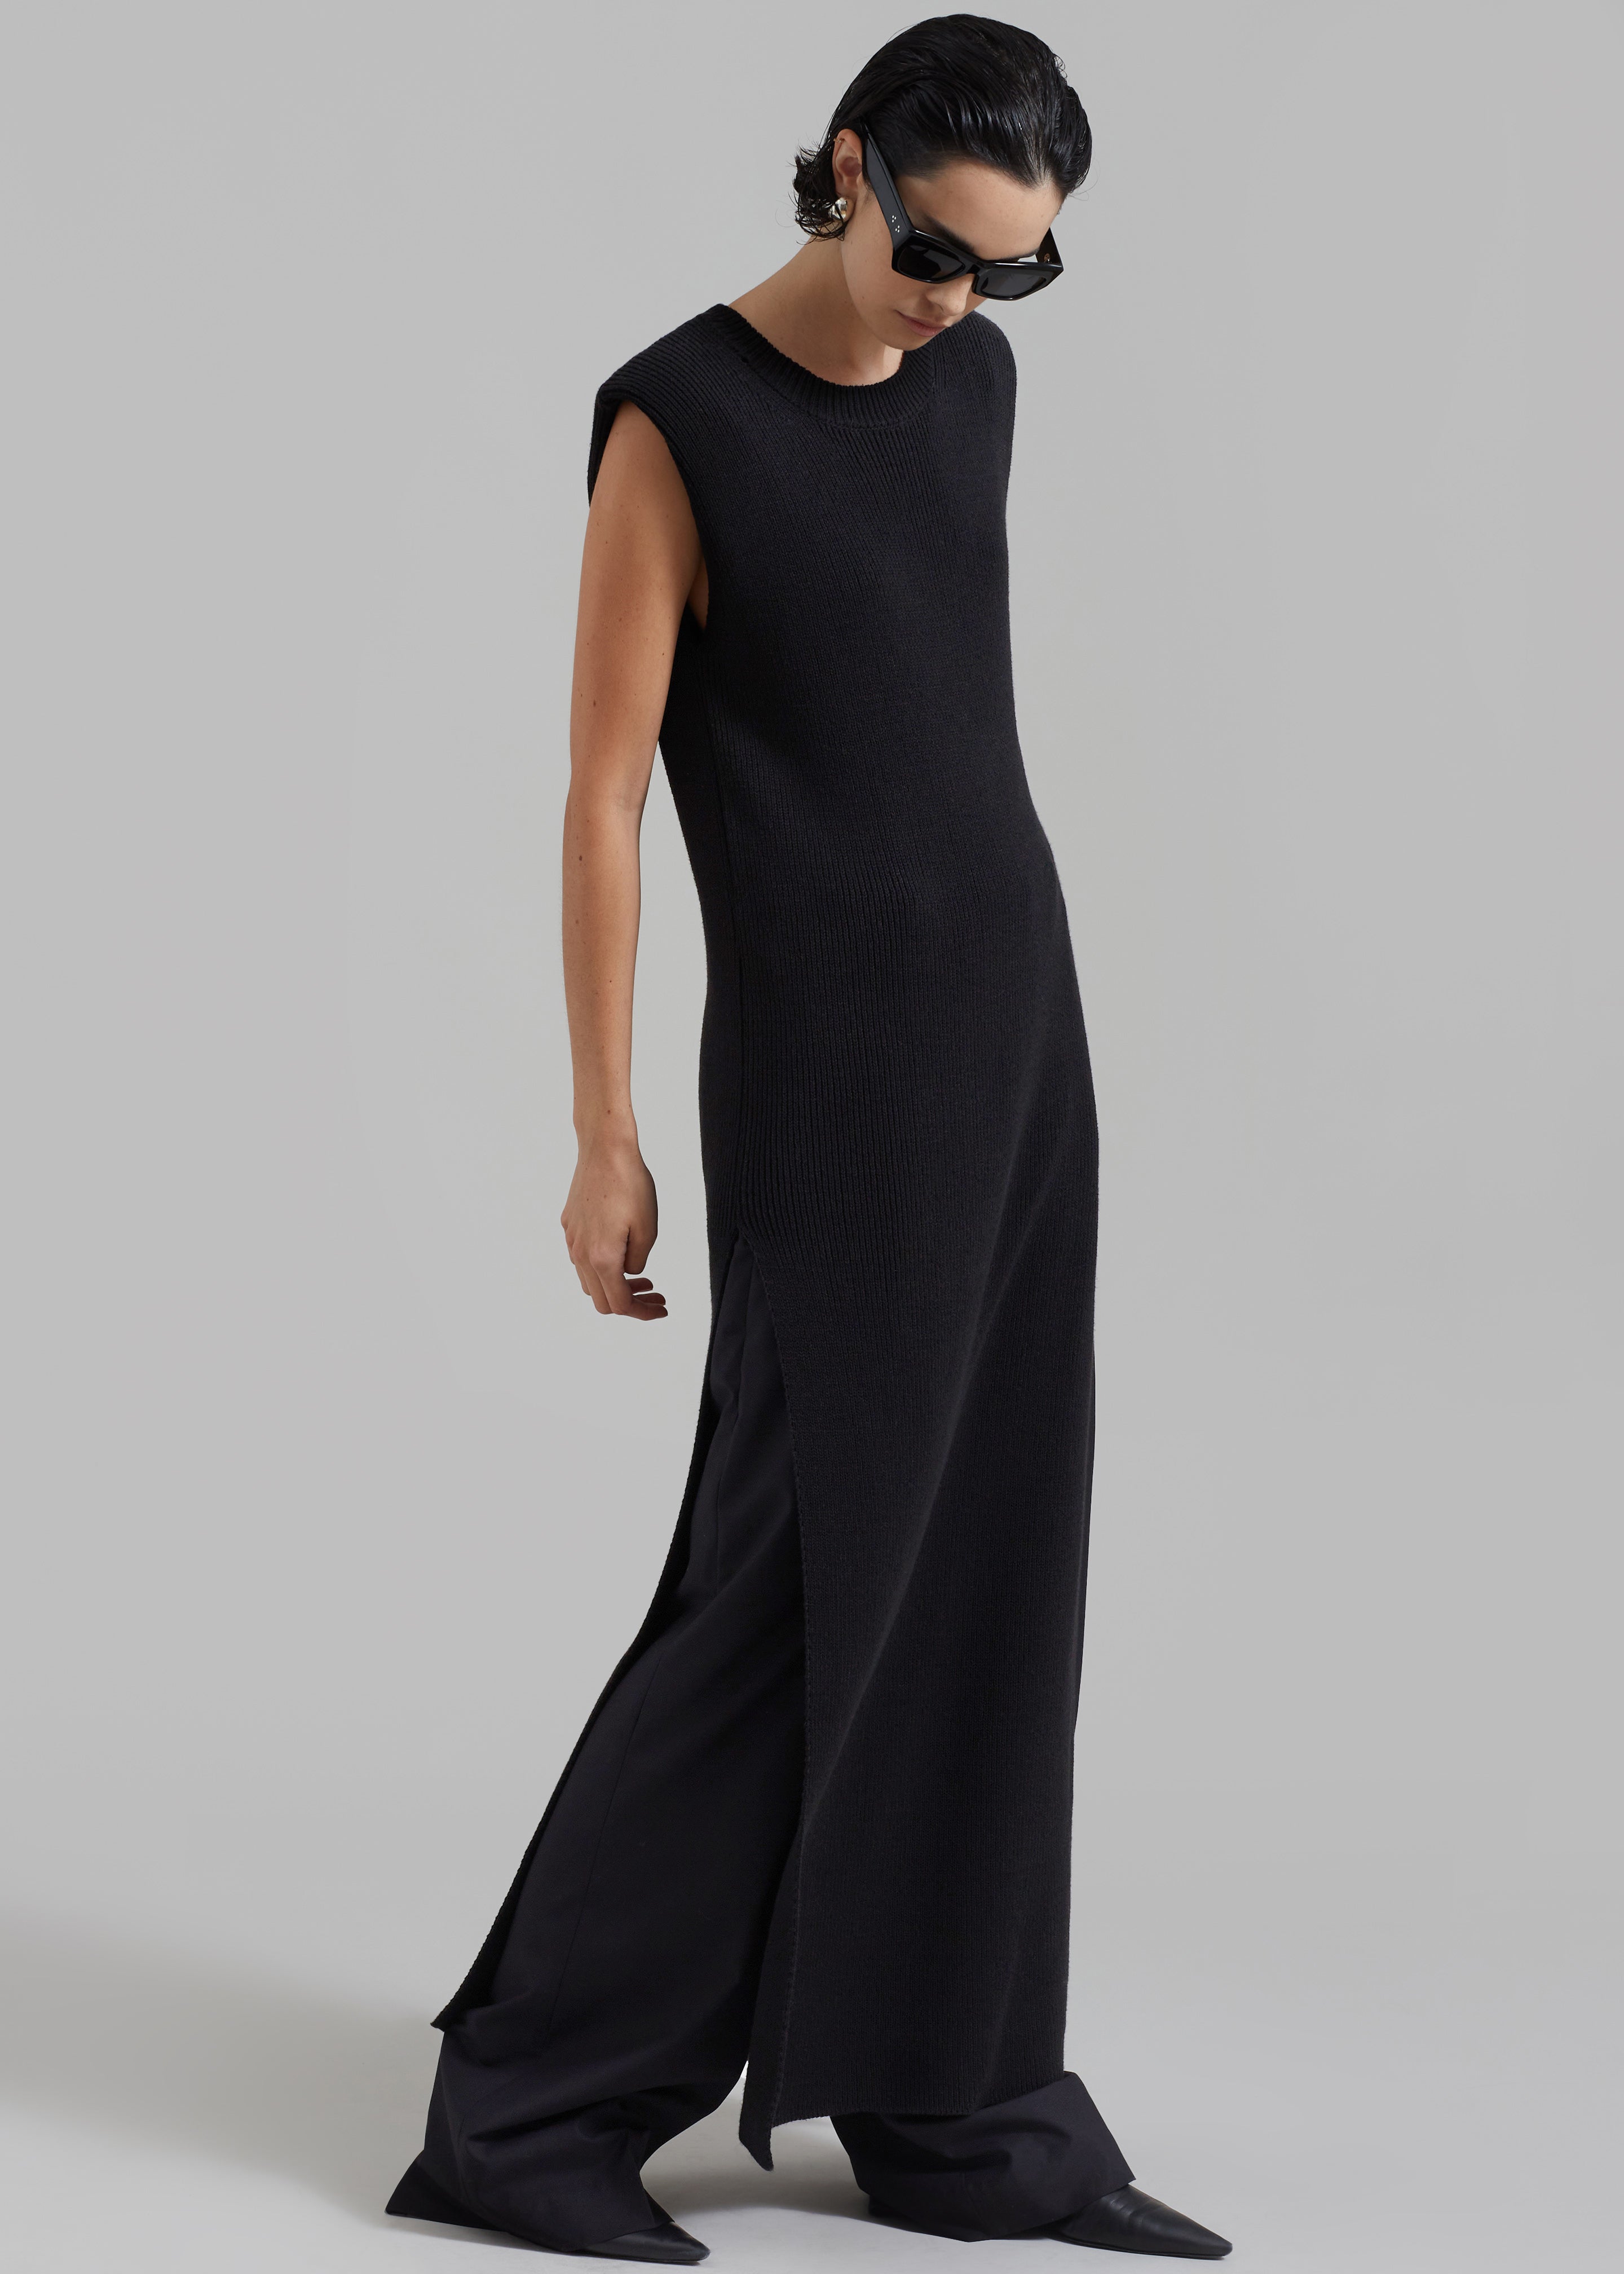 Wren Sleeveless Knit Dress - Black - 1